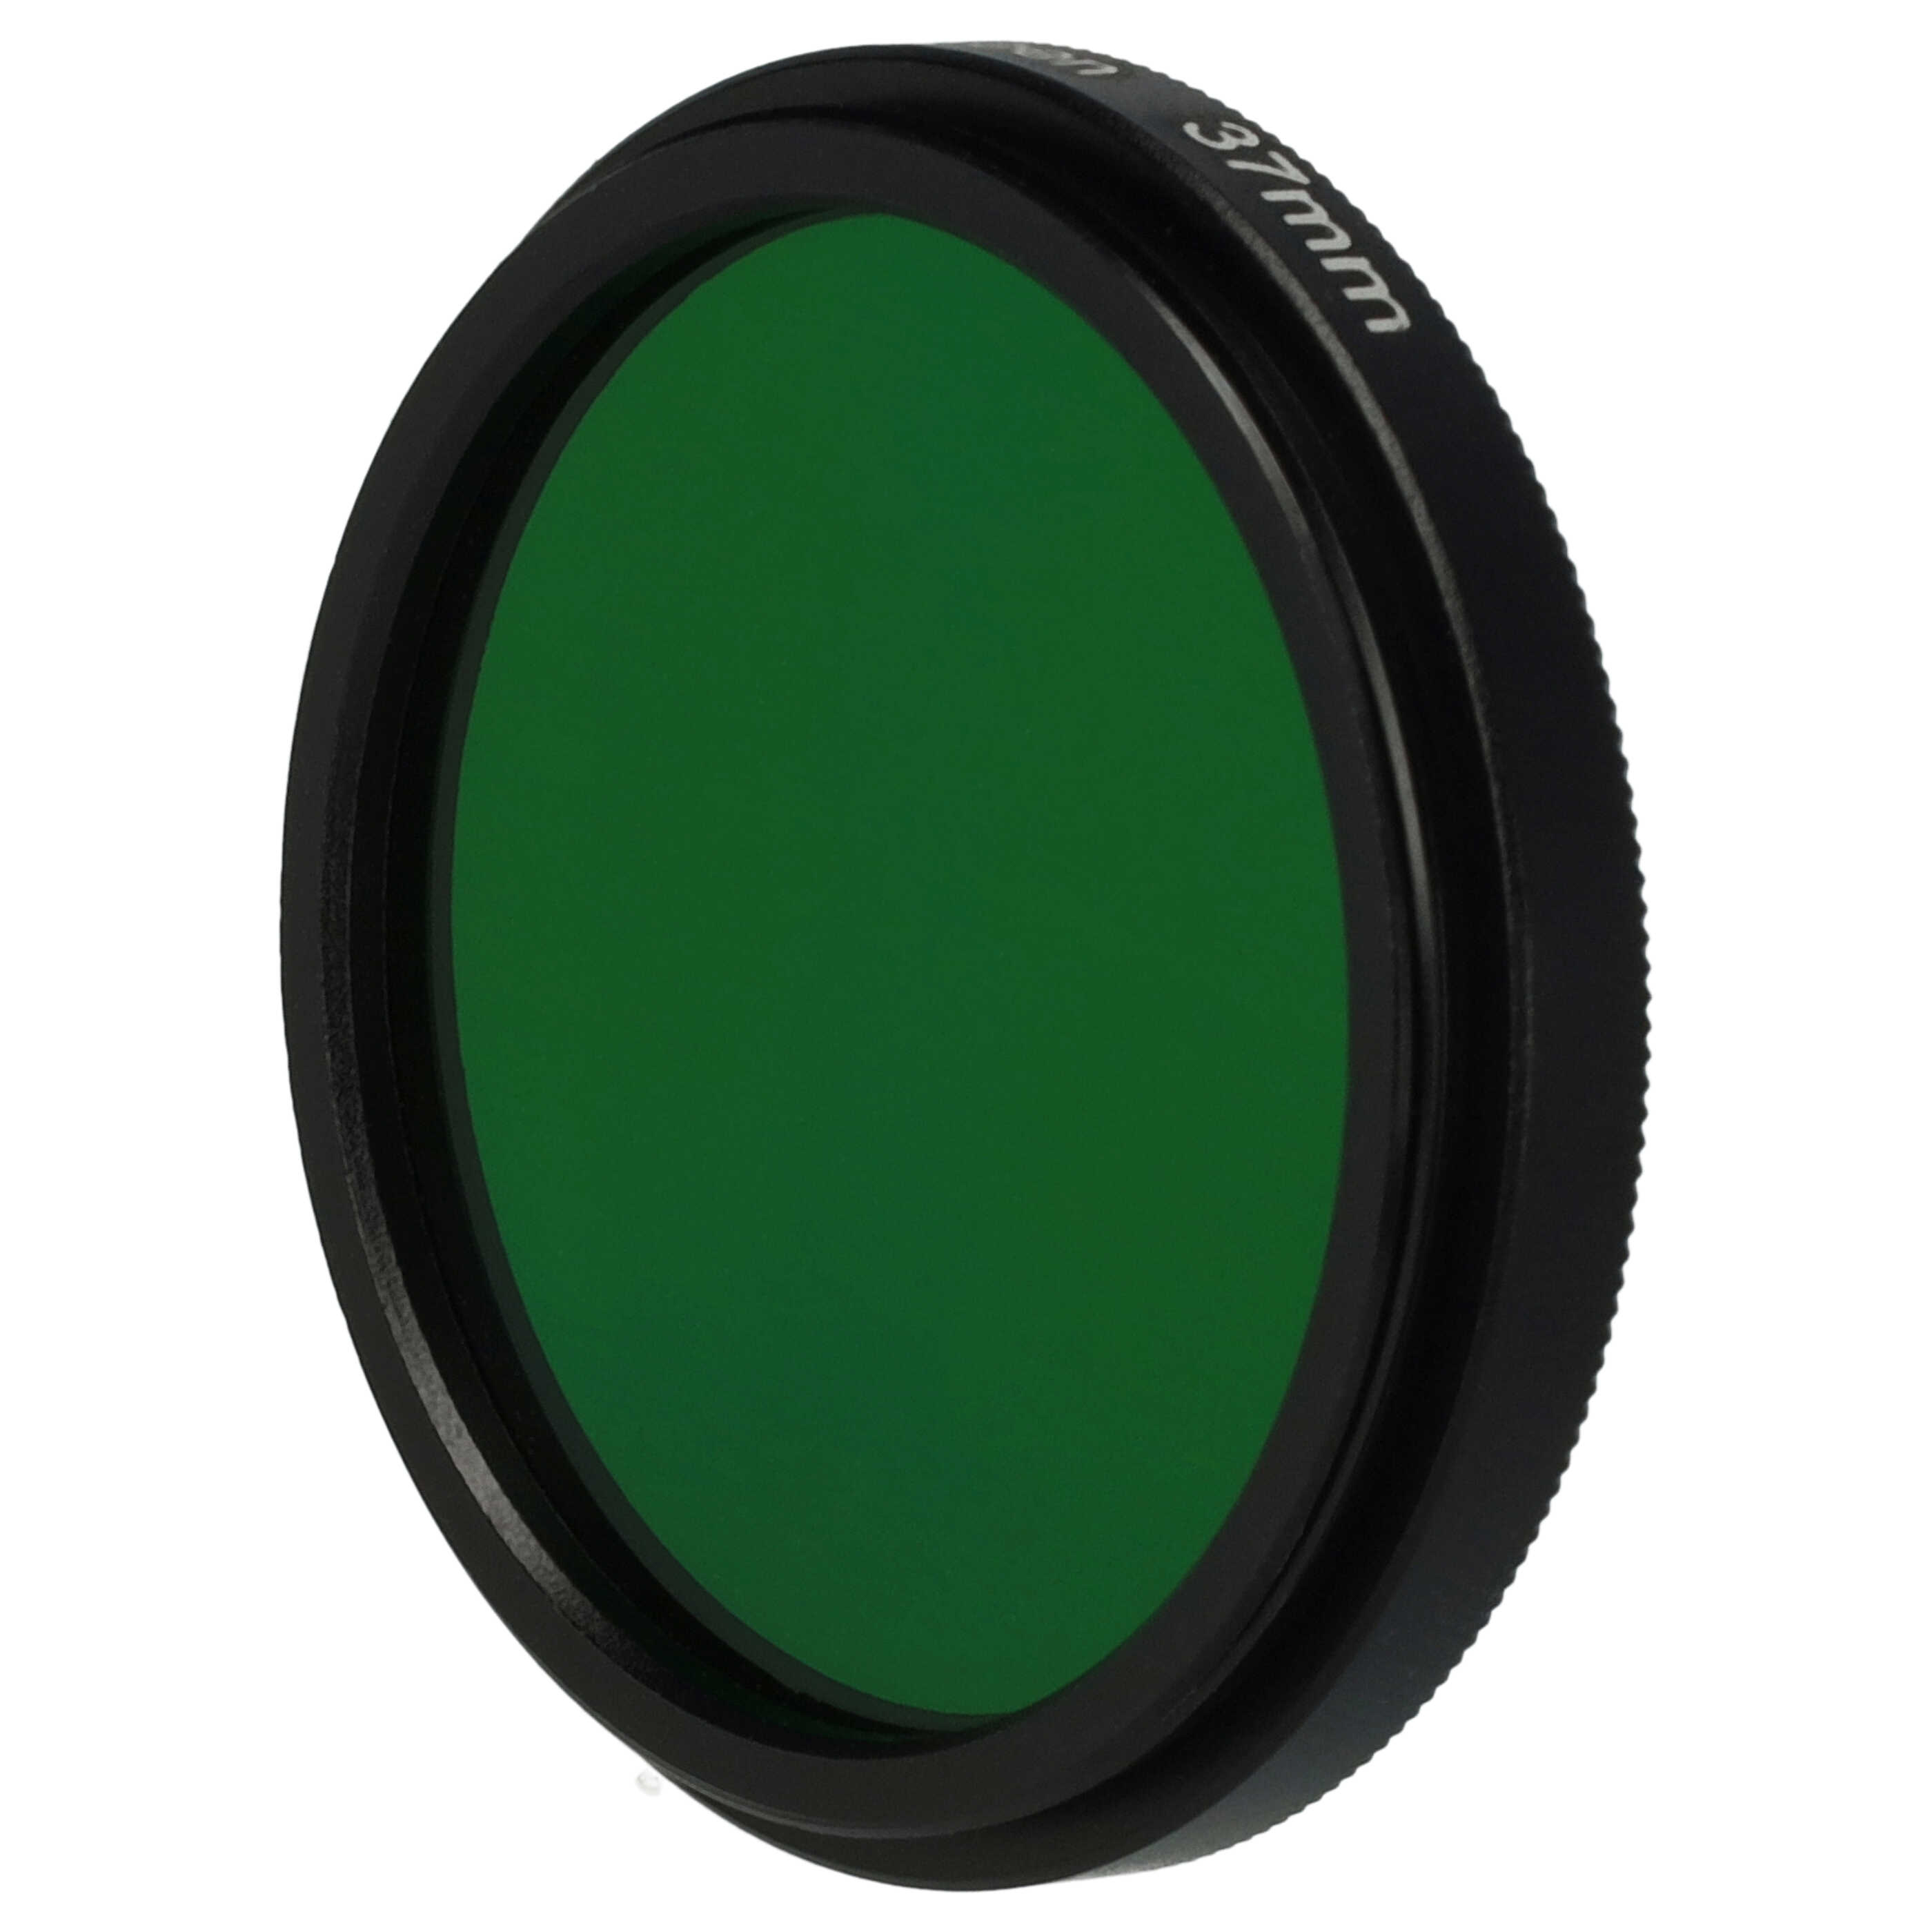 Filtro de color para objetivo de cámara con rosca de filtro de 37 mm - Filtro verde